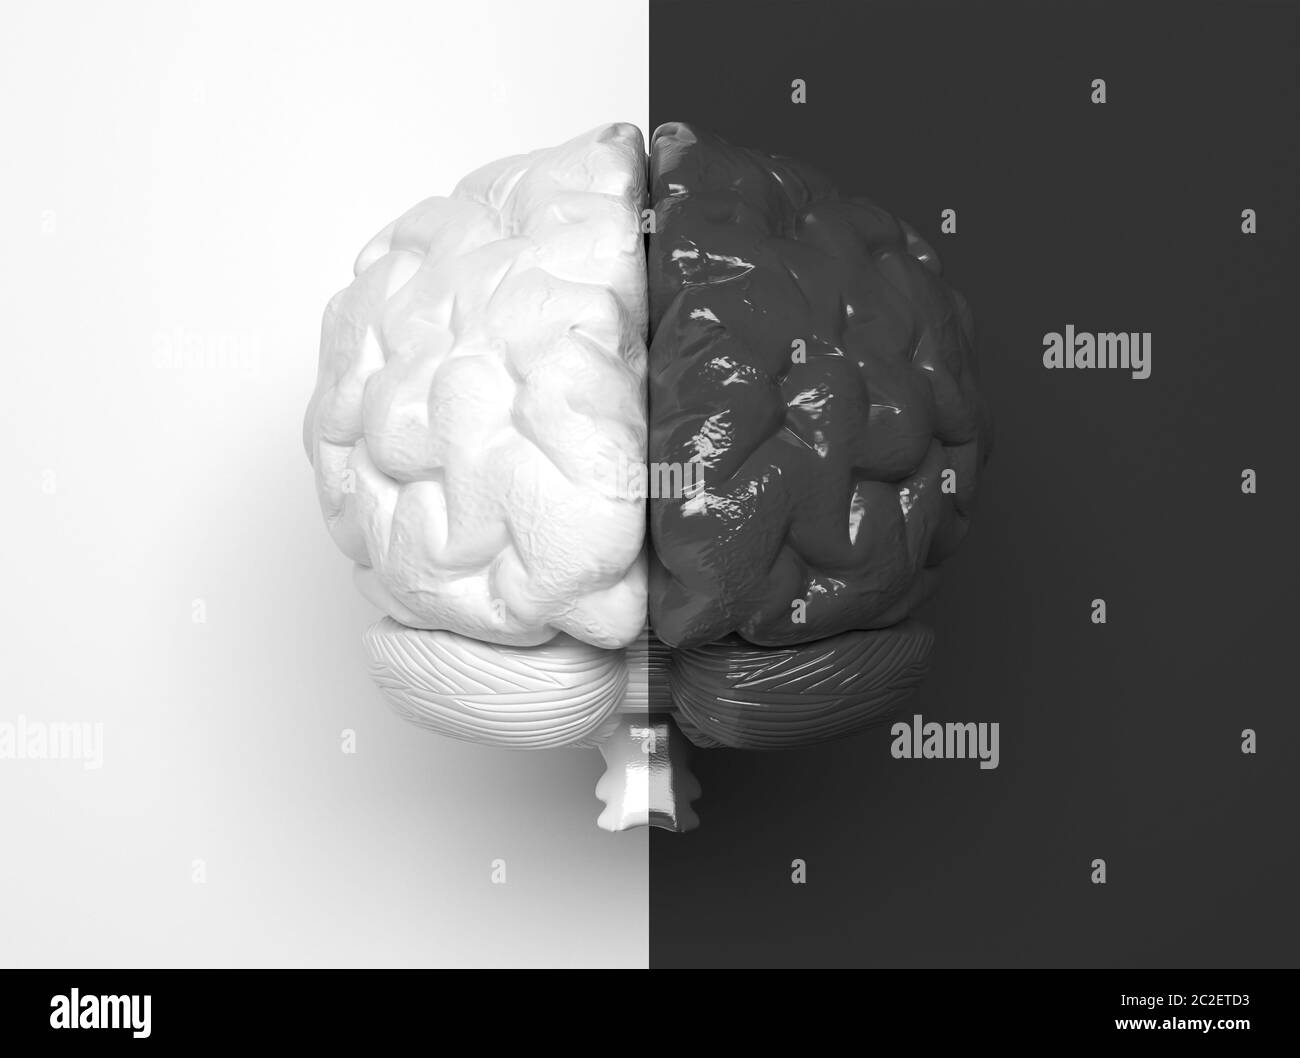 Le cerveau humain noir et blanc est divisé en deux parties au milieu. Une moitié est blanche, l'autre moitié est noire. Illustrationratio conceptuel créatif Banque D'Images